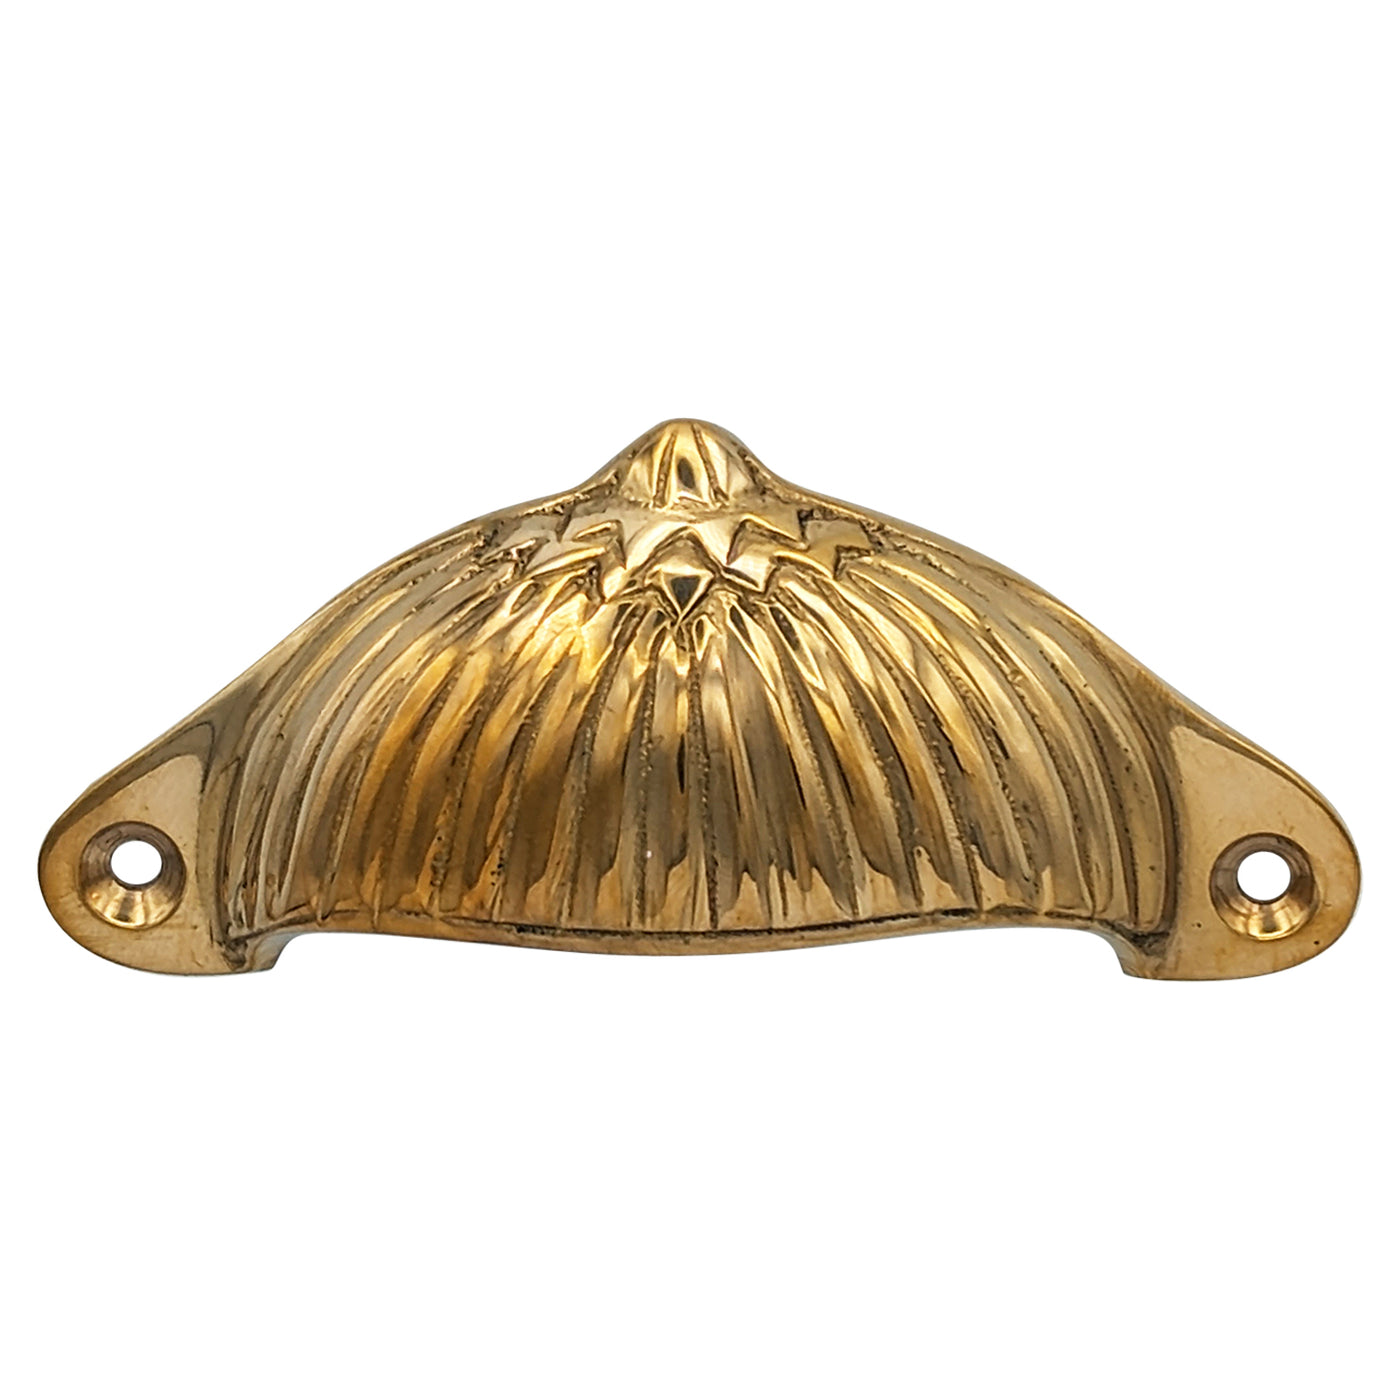 4 1/8 Inch Solid Brass Art Deco Fan Cup Pull